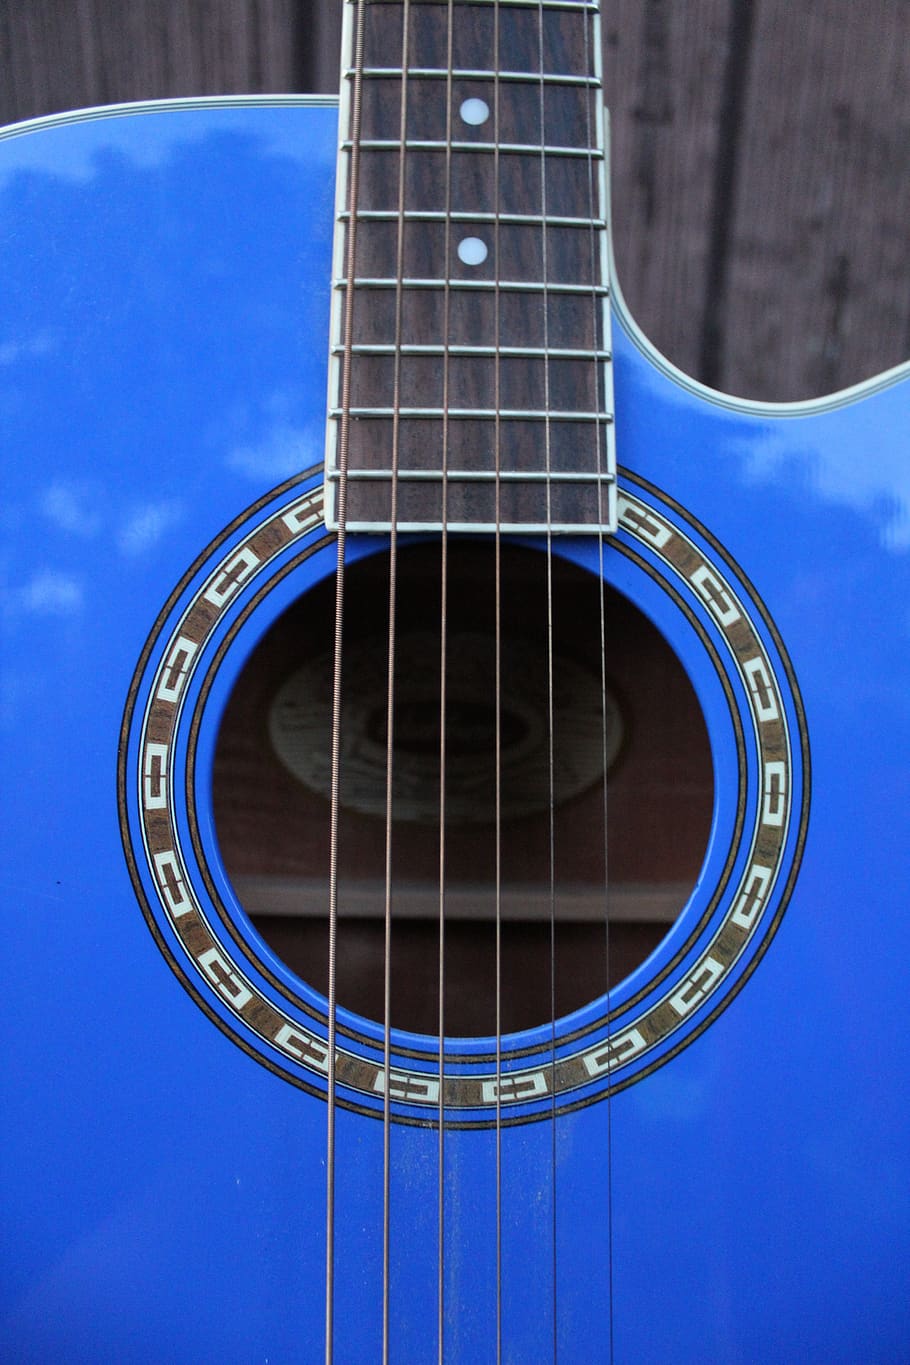 gitar, biru, musik, close-up, string, instrumen, akustik, wallpaper layar kunci, instrumen string, alat musik string